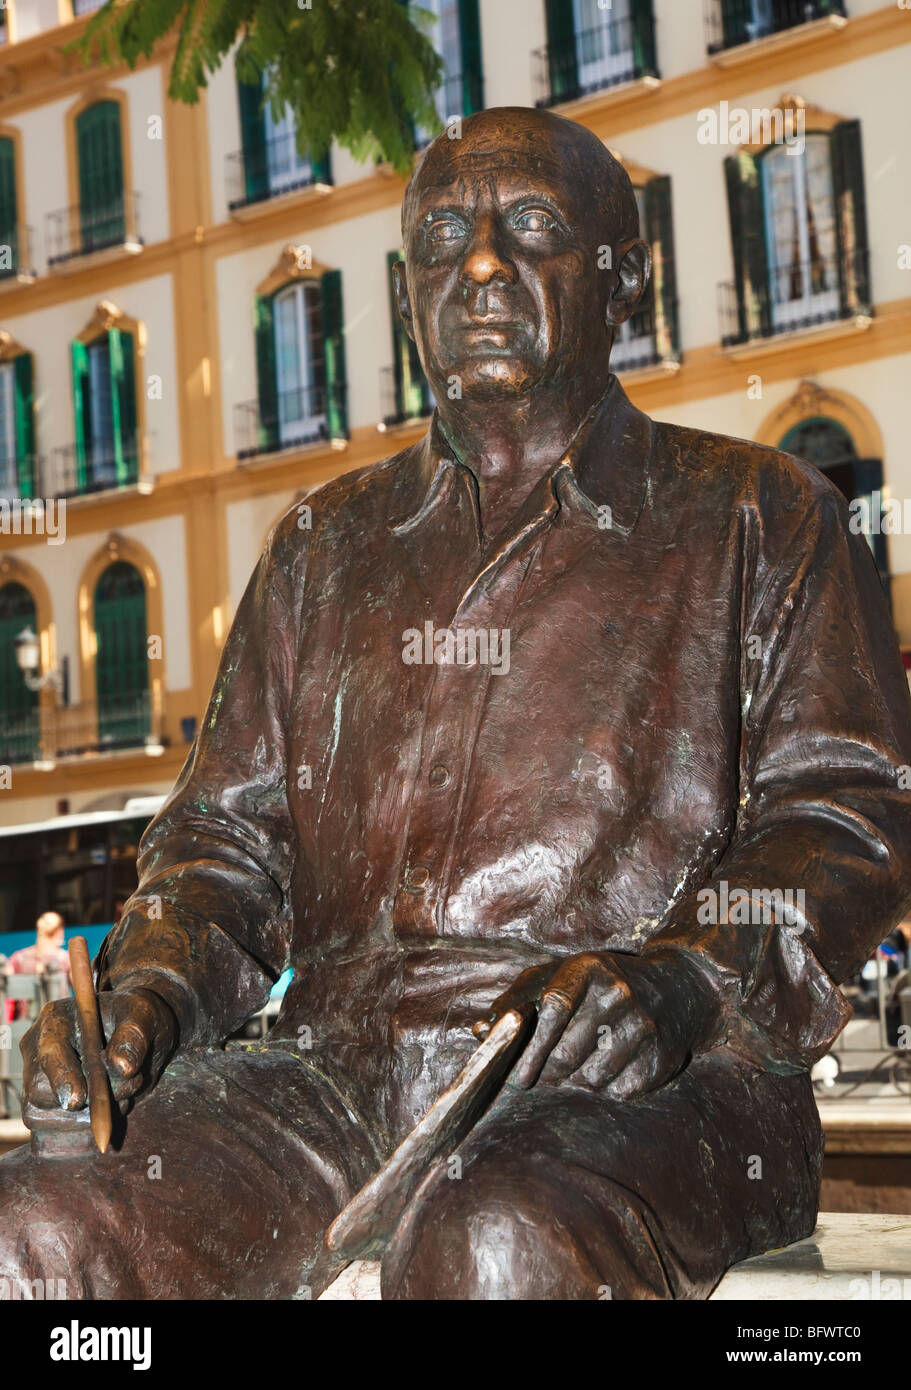 Statua di bronzo di Pablo Picasso da Francisco Lopez, in Plaza de la Merced, Malaga, Spagna. Foto Stock